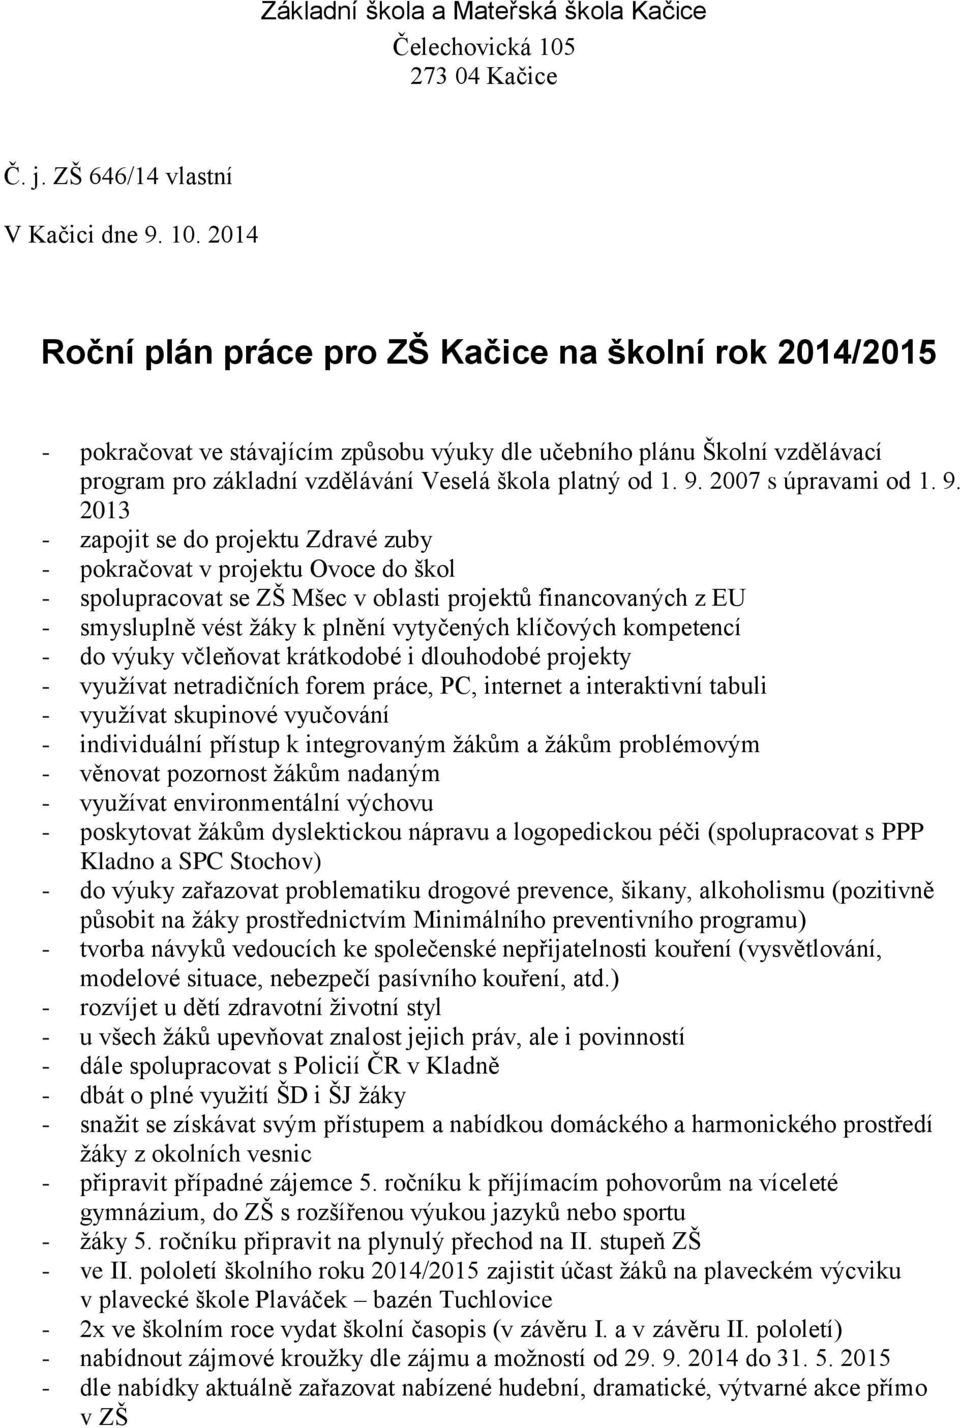 2014 Roční plán práce pro ZŠ Kačice na školní rok 2014/2015 - pokračovat ve stávajícím způsobu výuky dle učebního plánu Školní vzdělávací program pro základní vzdělávání Veselá škola platný od 1. 9.